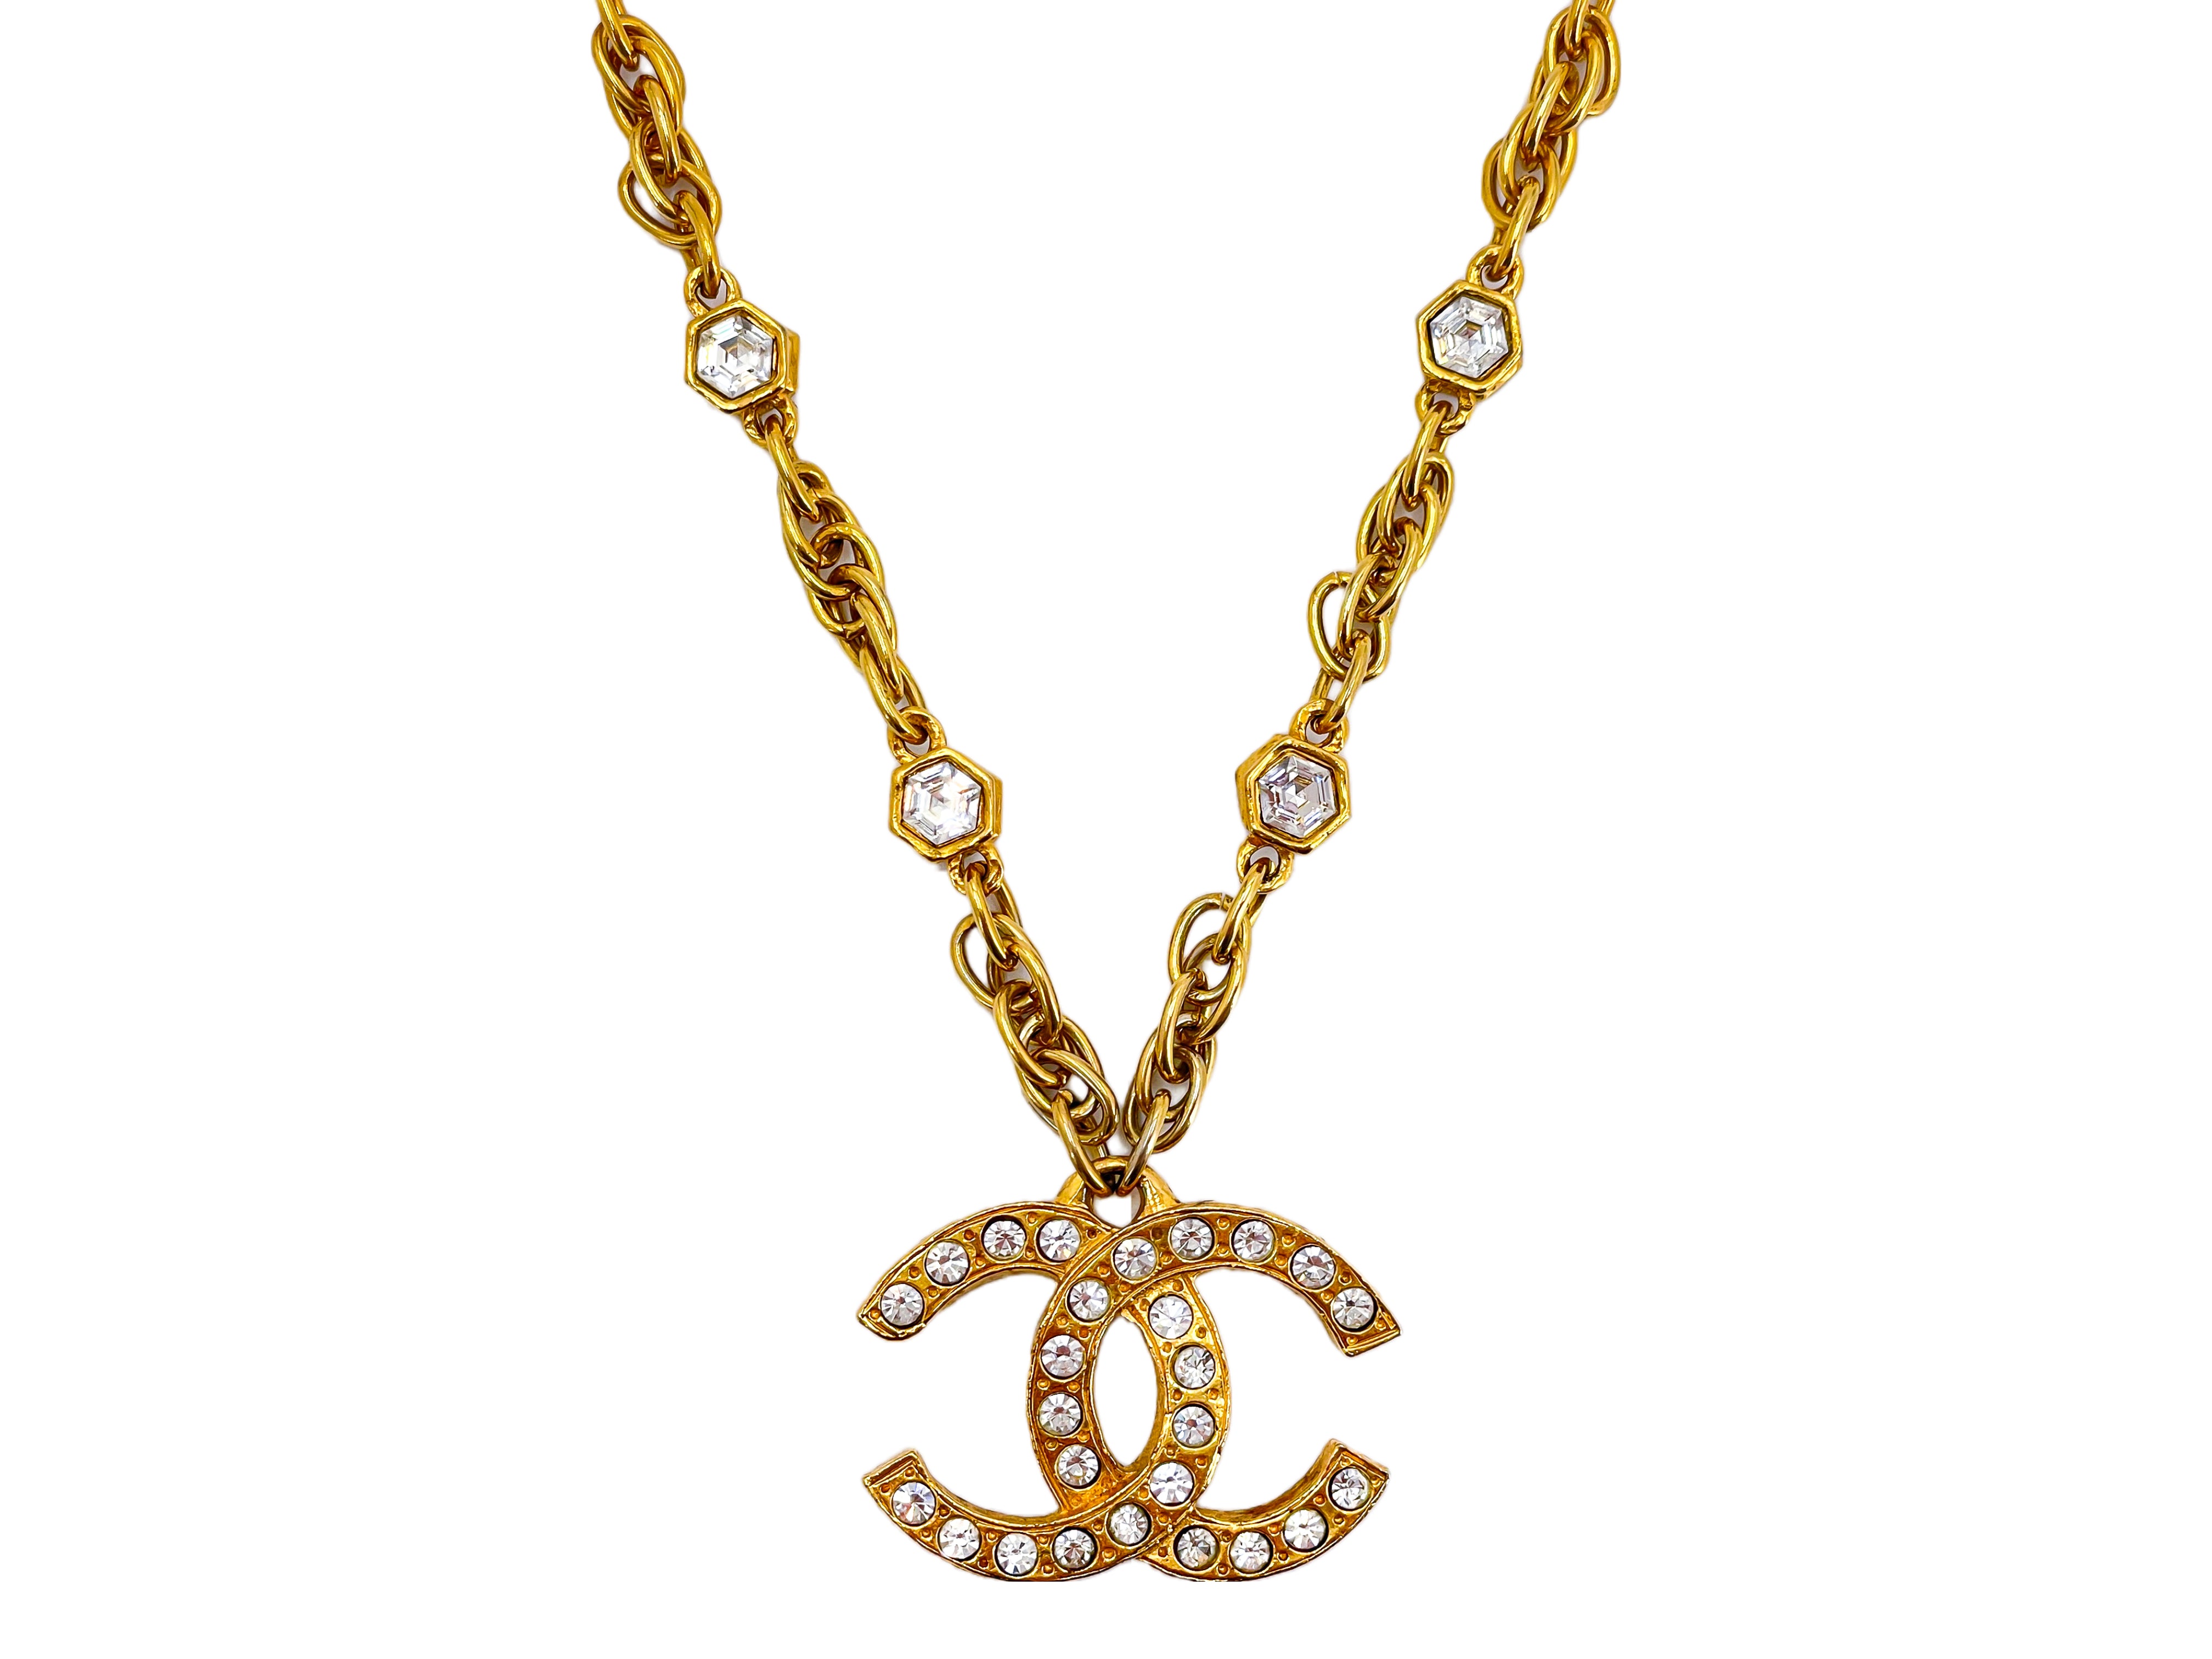 CHANEL, Jewelry, Chanel Gold Tone Crystal Big Cc Logo Brooch